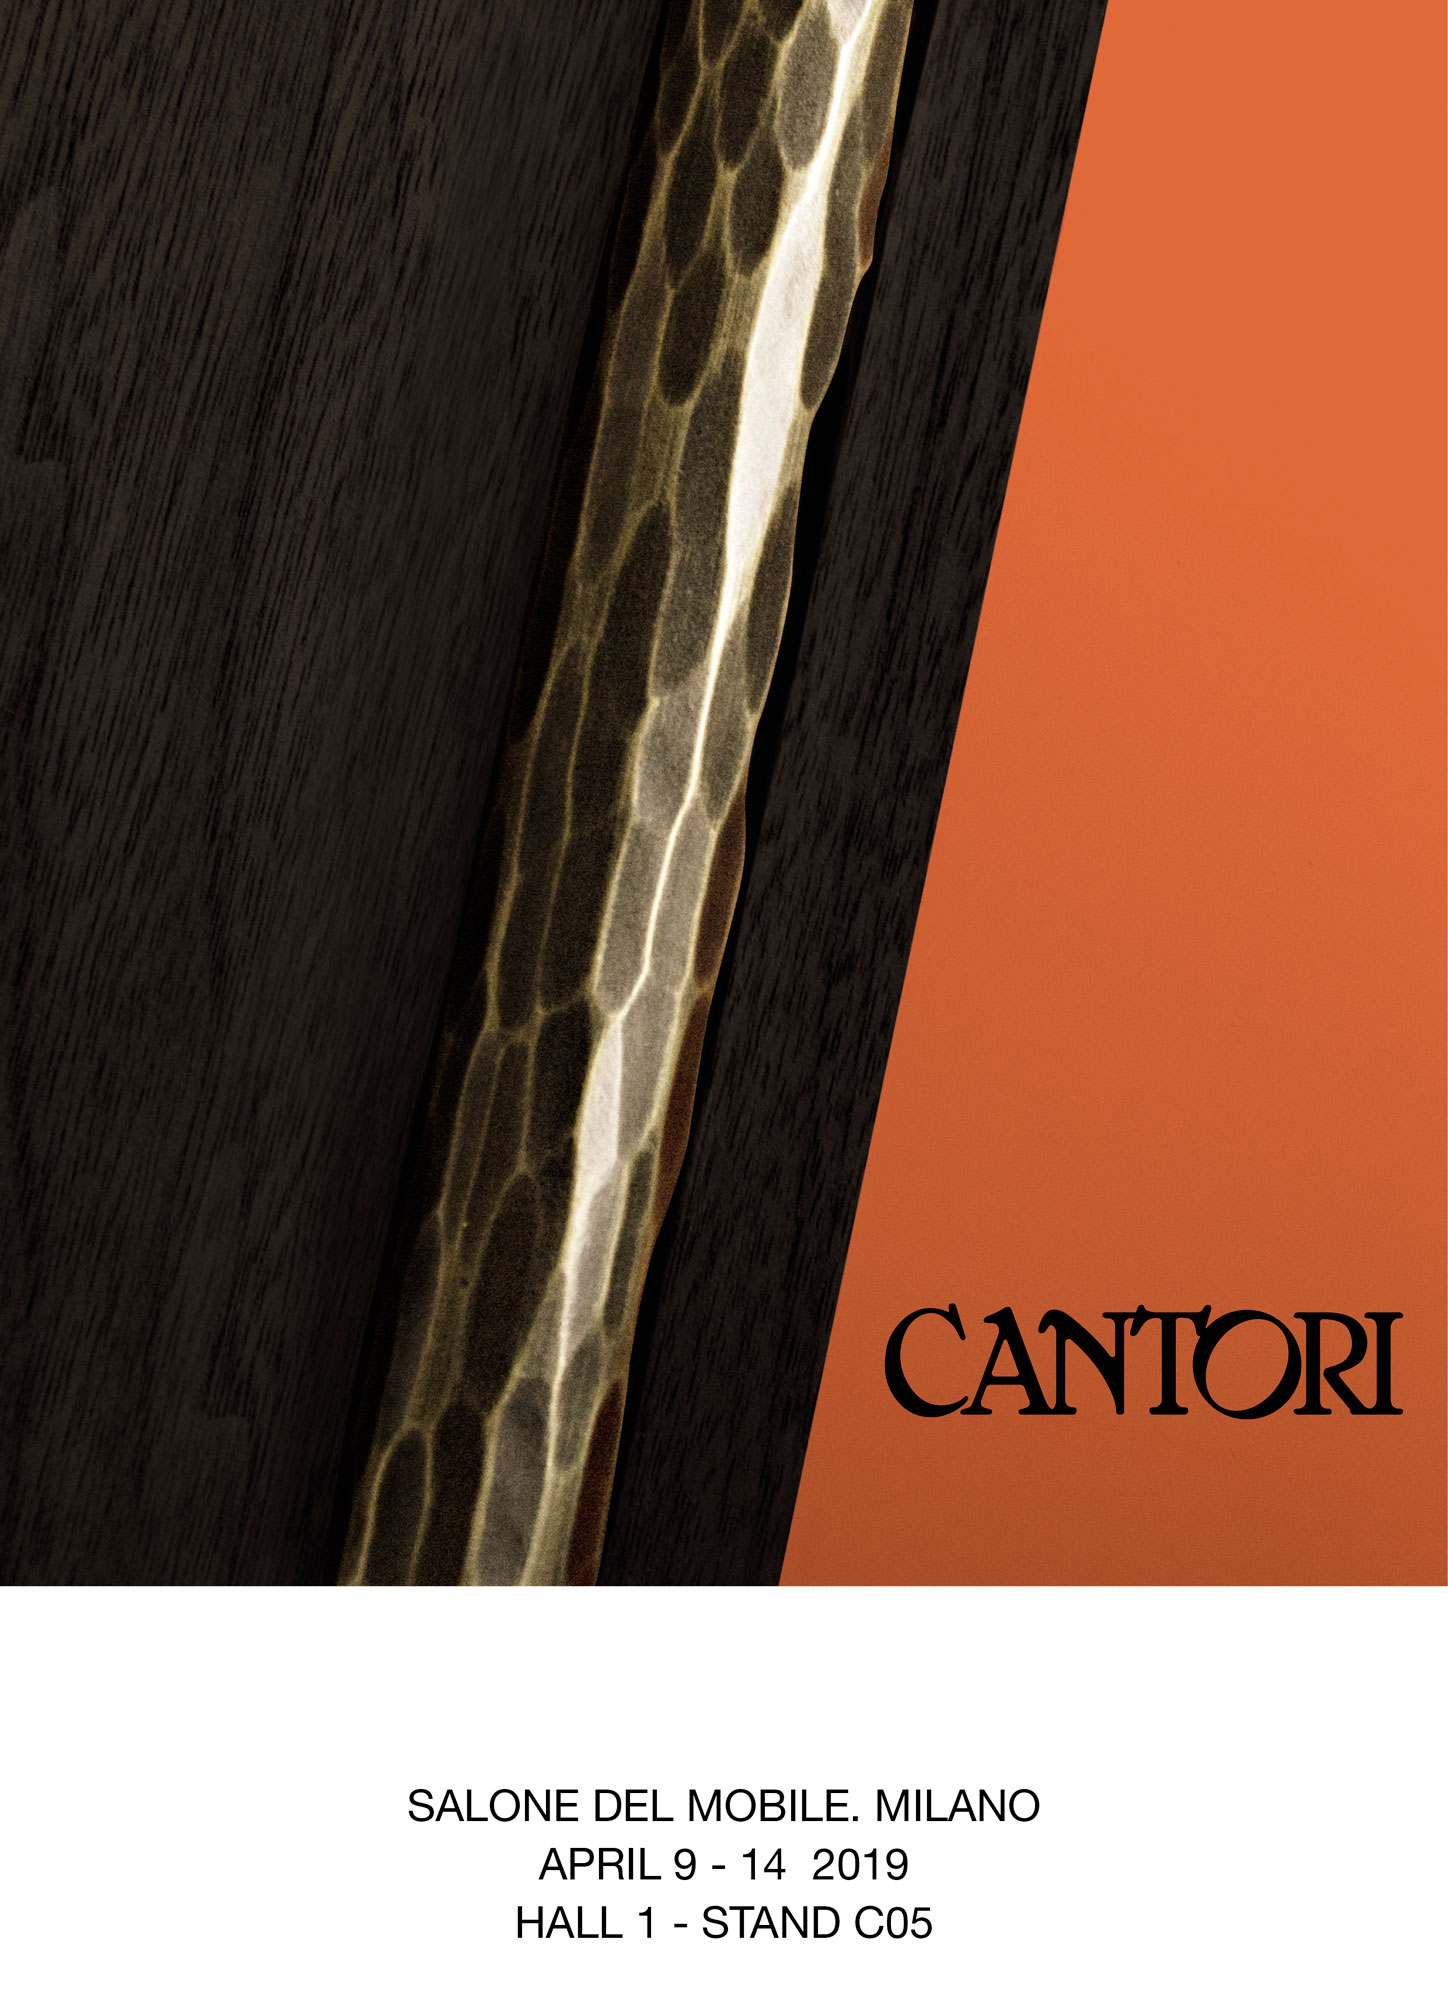 18/03/2019 Cantori at Salone del Mobile of Milano 2019 - Cantori